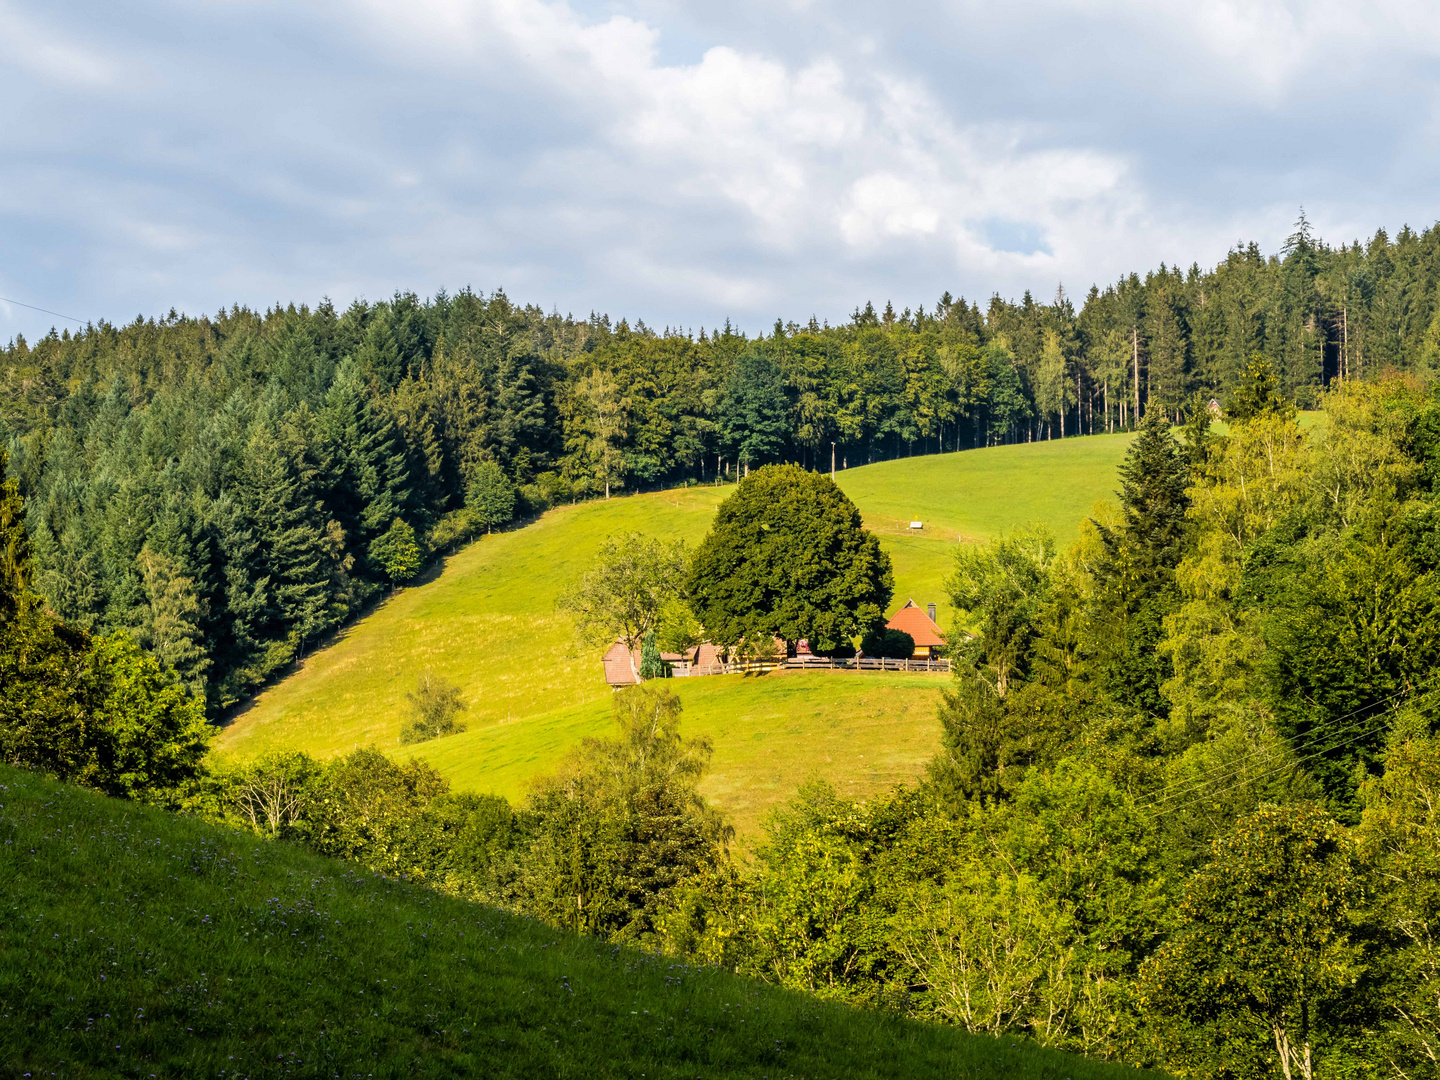 Der Schwarzwaldhof